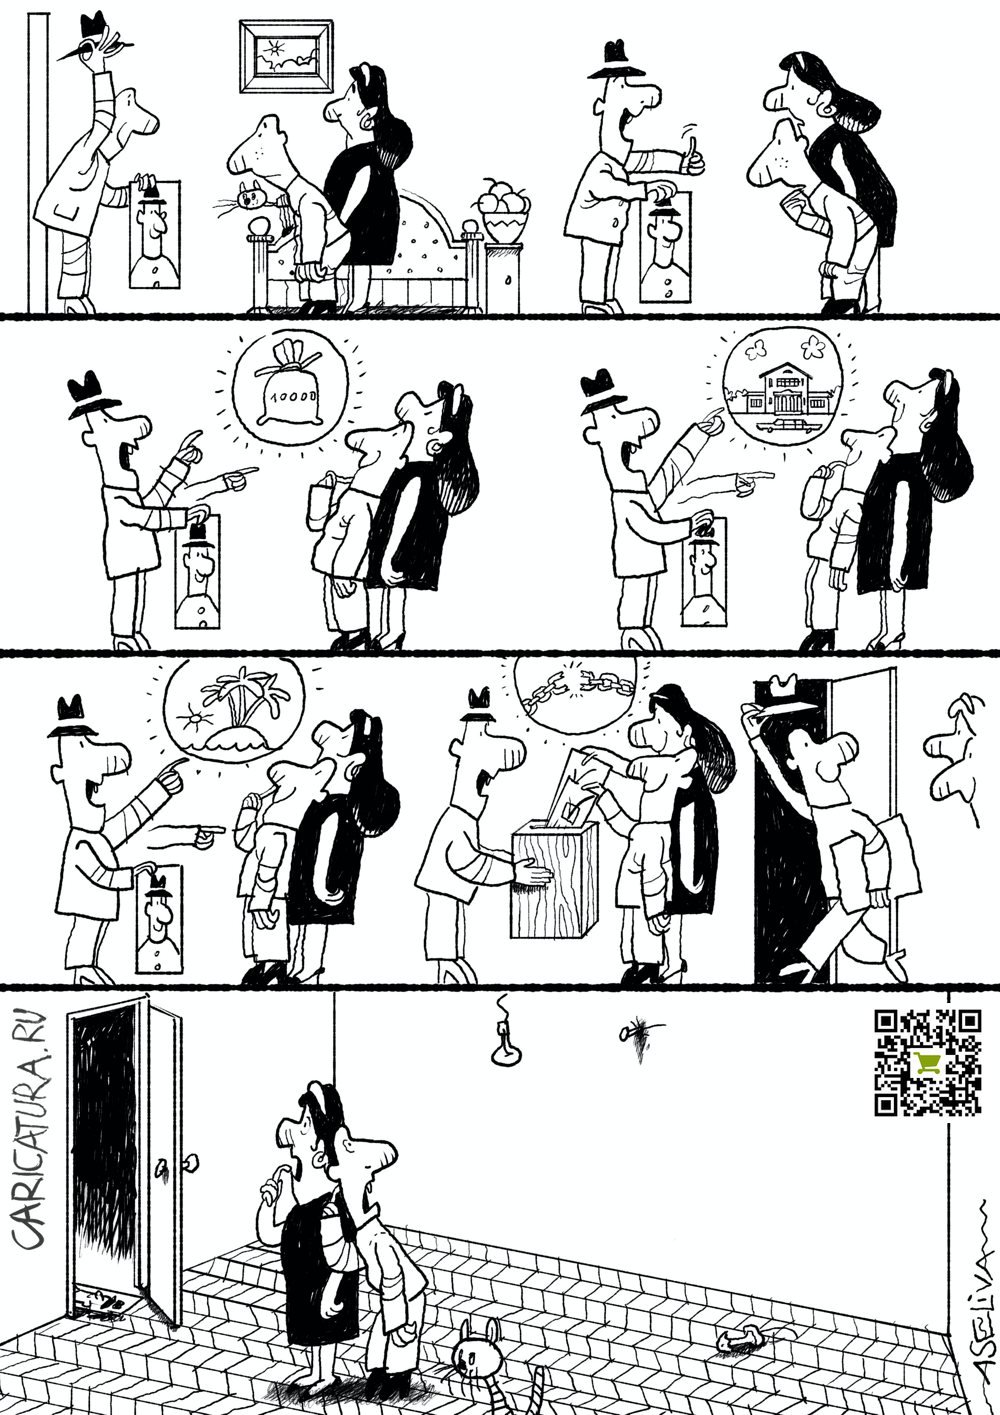 Комикс "Все на выборы", Андрей Селиванов